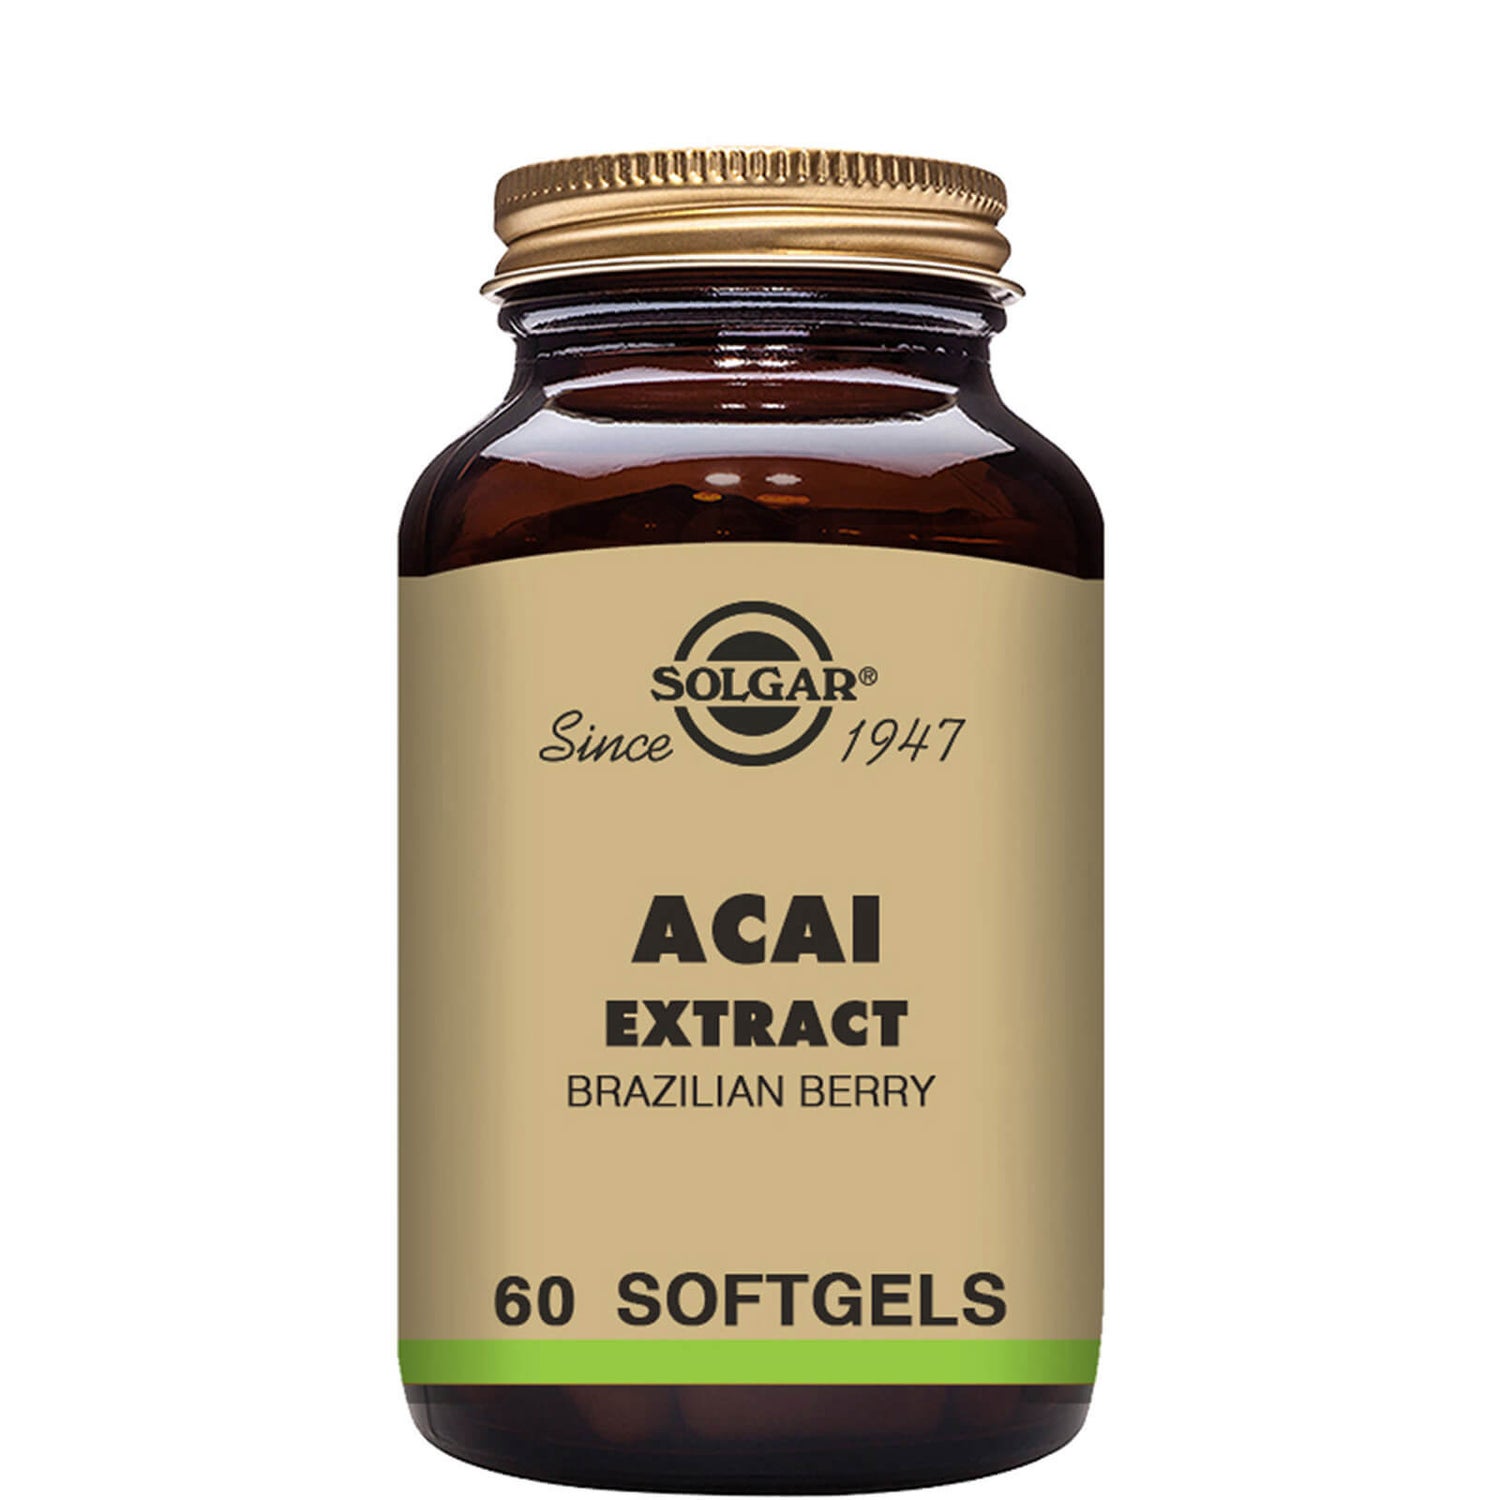 Solgar Acai Extract Softgels